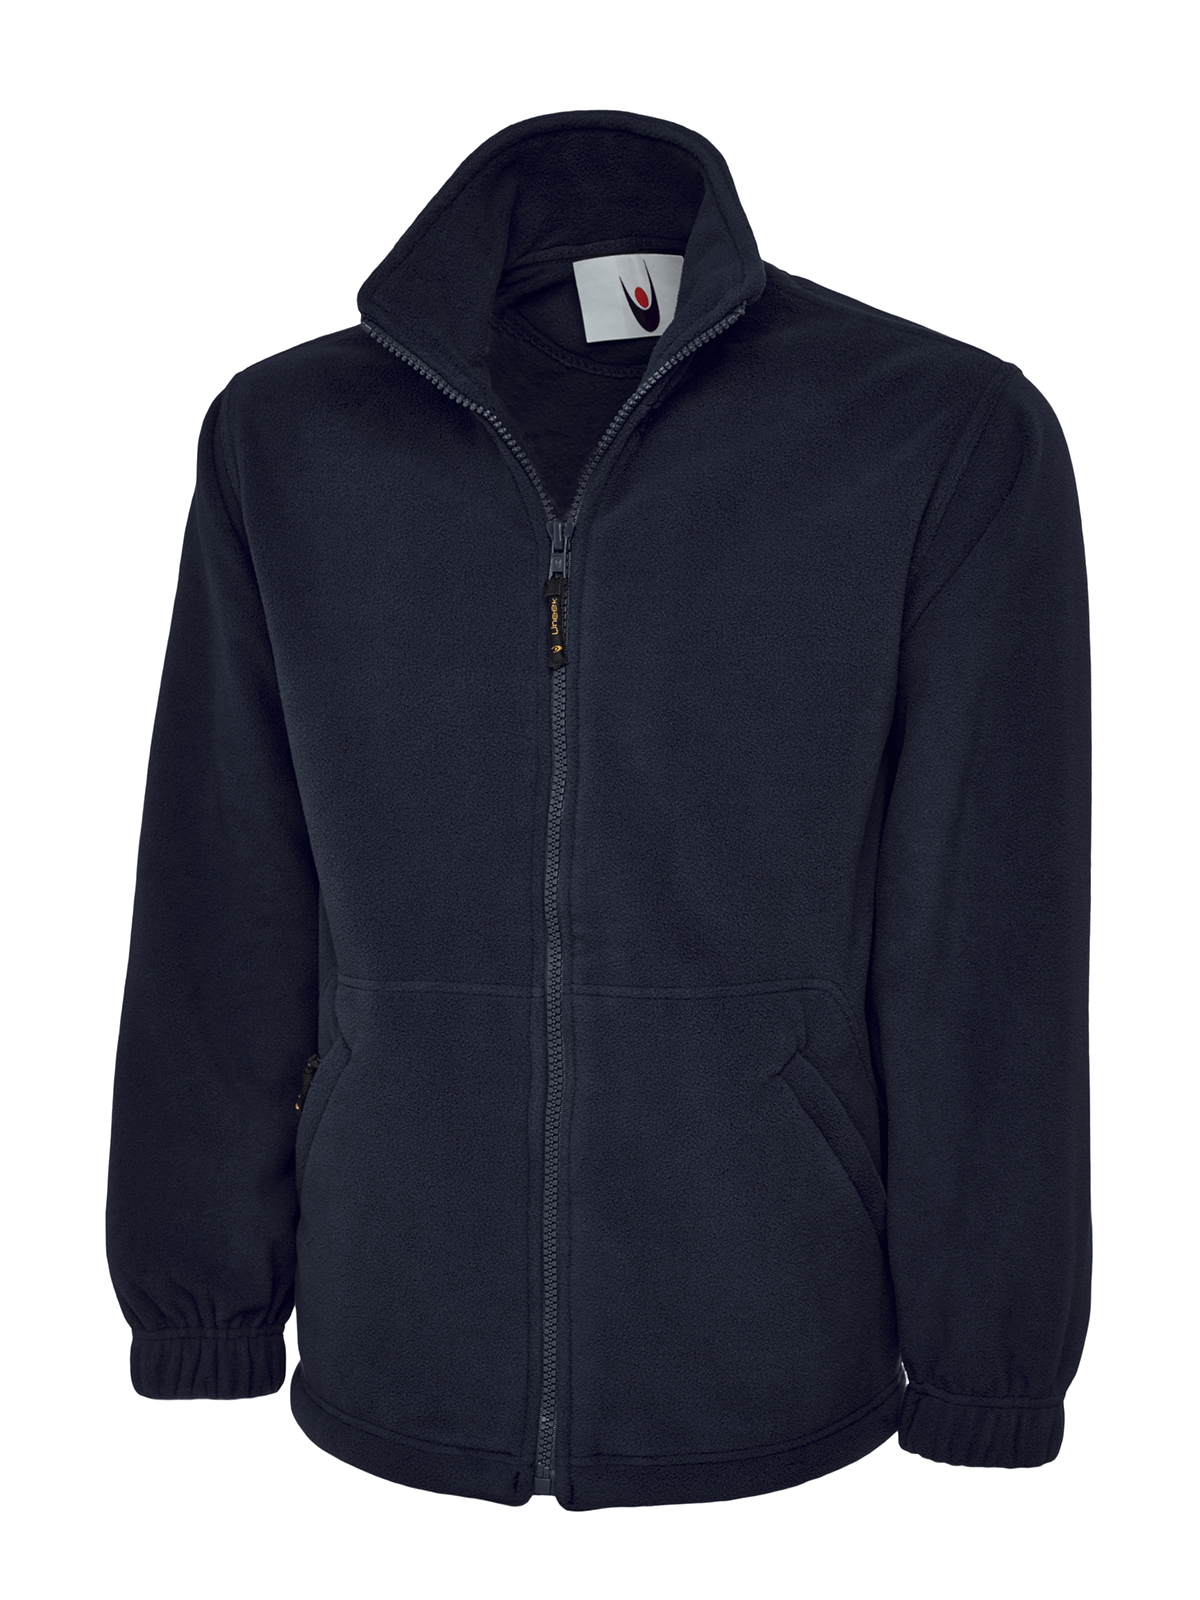 Full Zip Fleece Jacket, Navy - Size 4XL